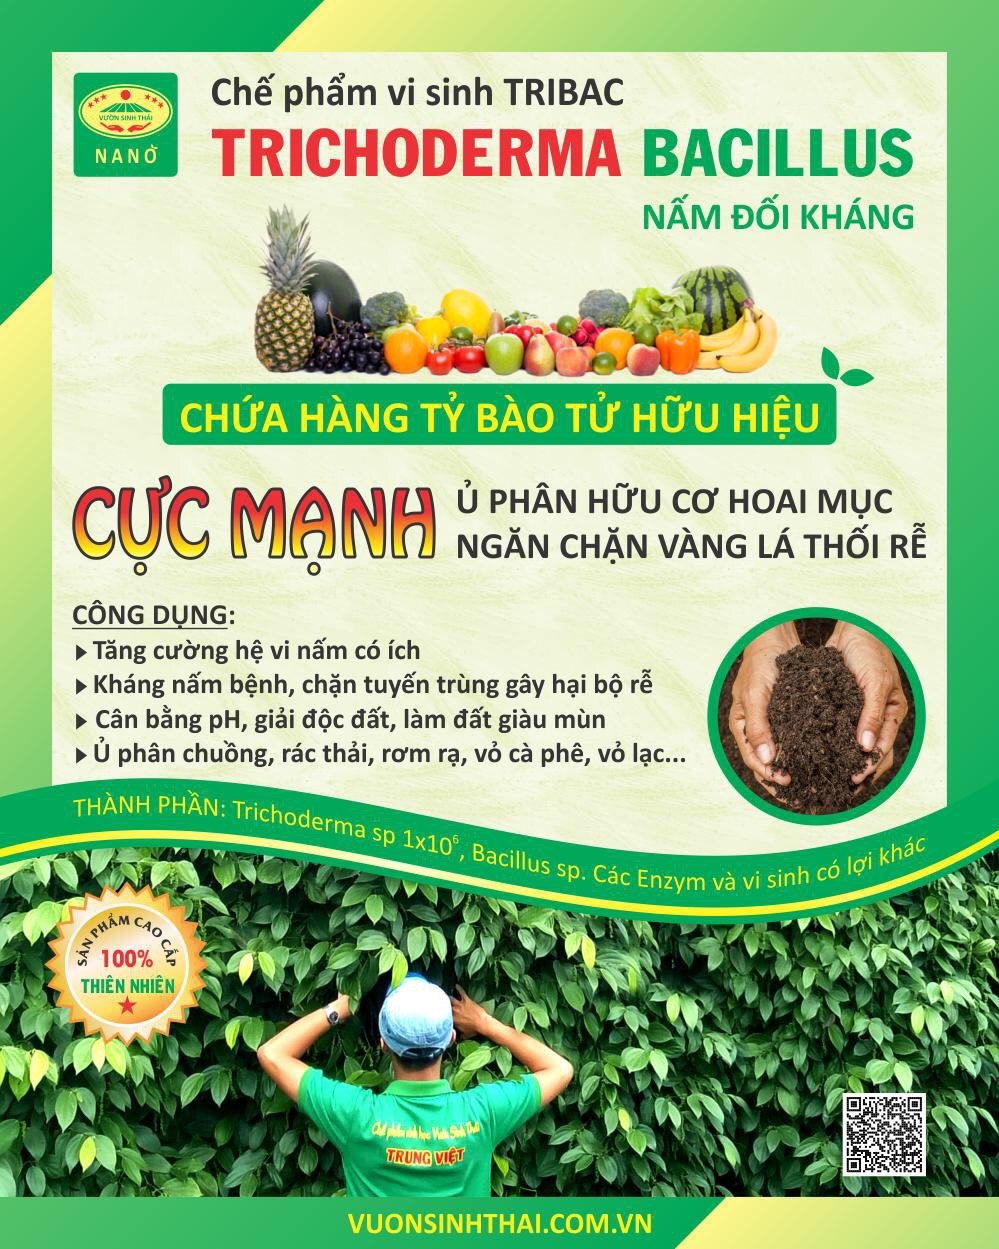 Nấm đối kháng Trichoderma Bacillus cực mạnh. Ngăn chặn tuyến trùng nấm bệnh gây vàng lá thối rễ. Ủ phân chuồng hoai mục